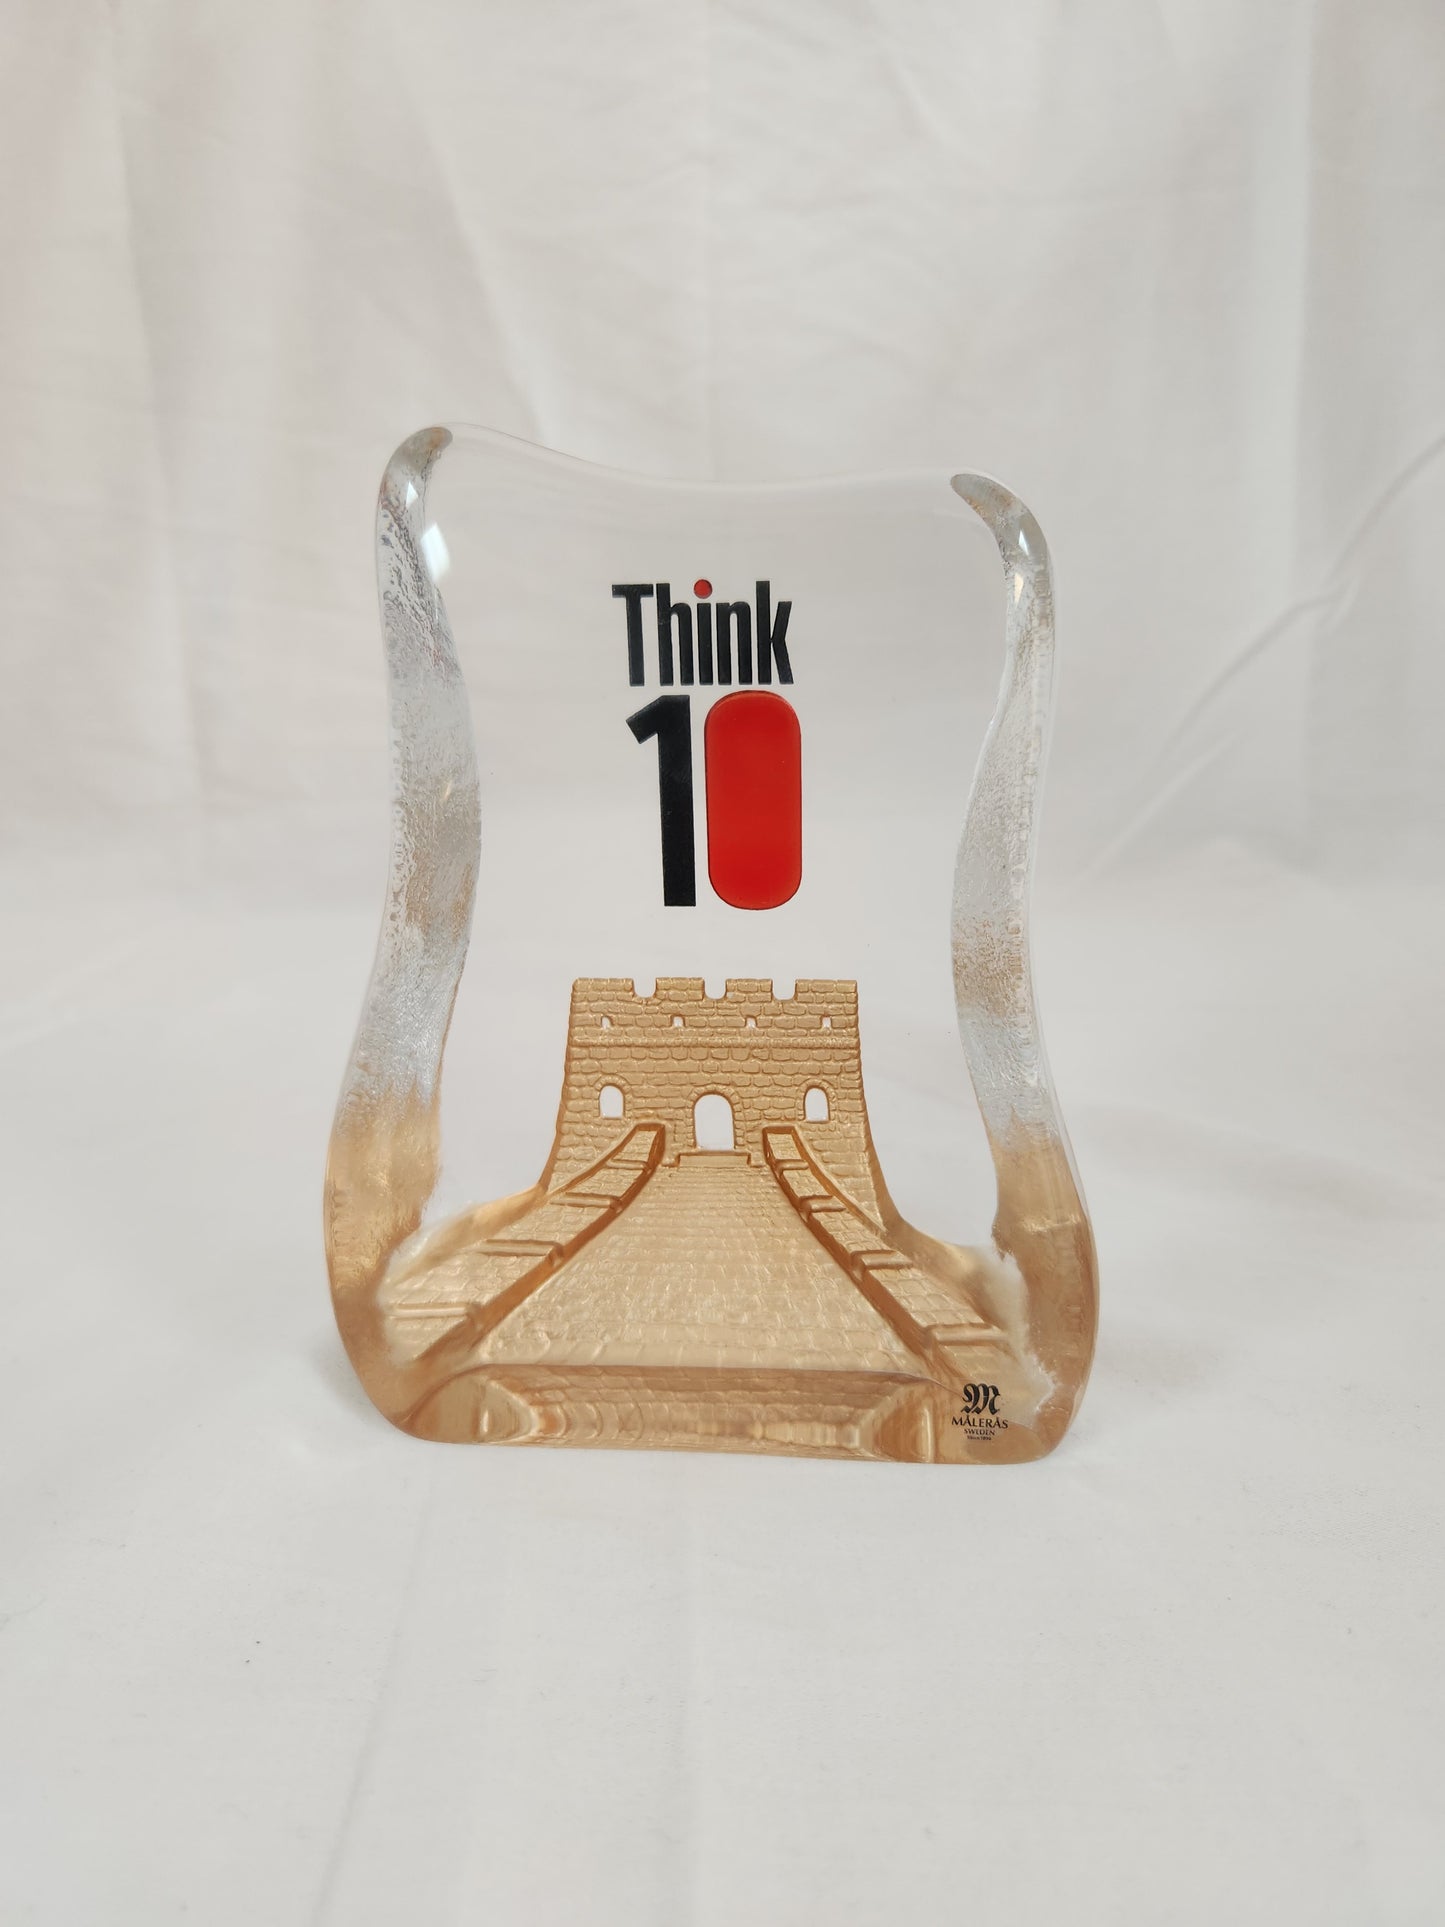 Mats Jonnason Maleras "Think 10" Glass Paperweight